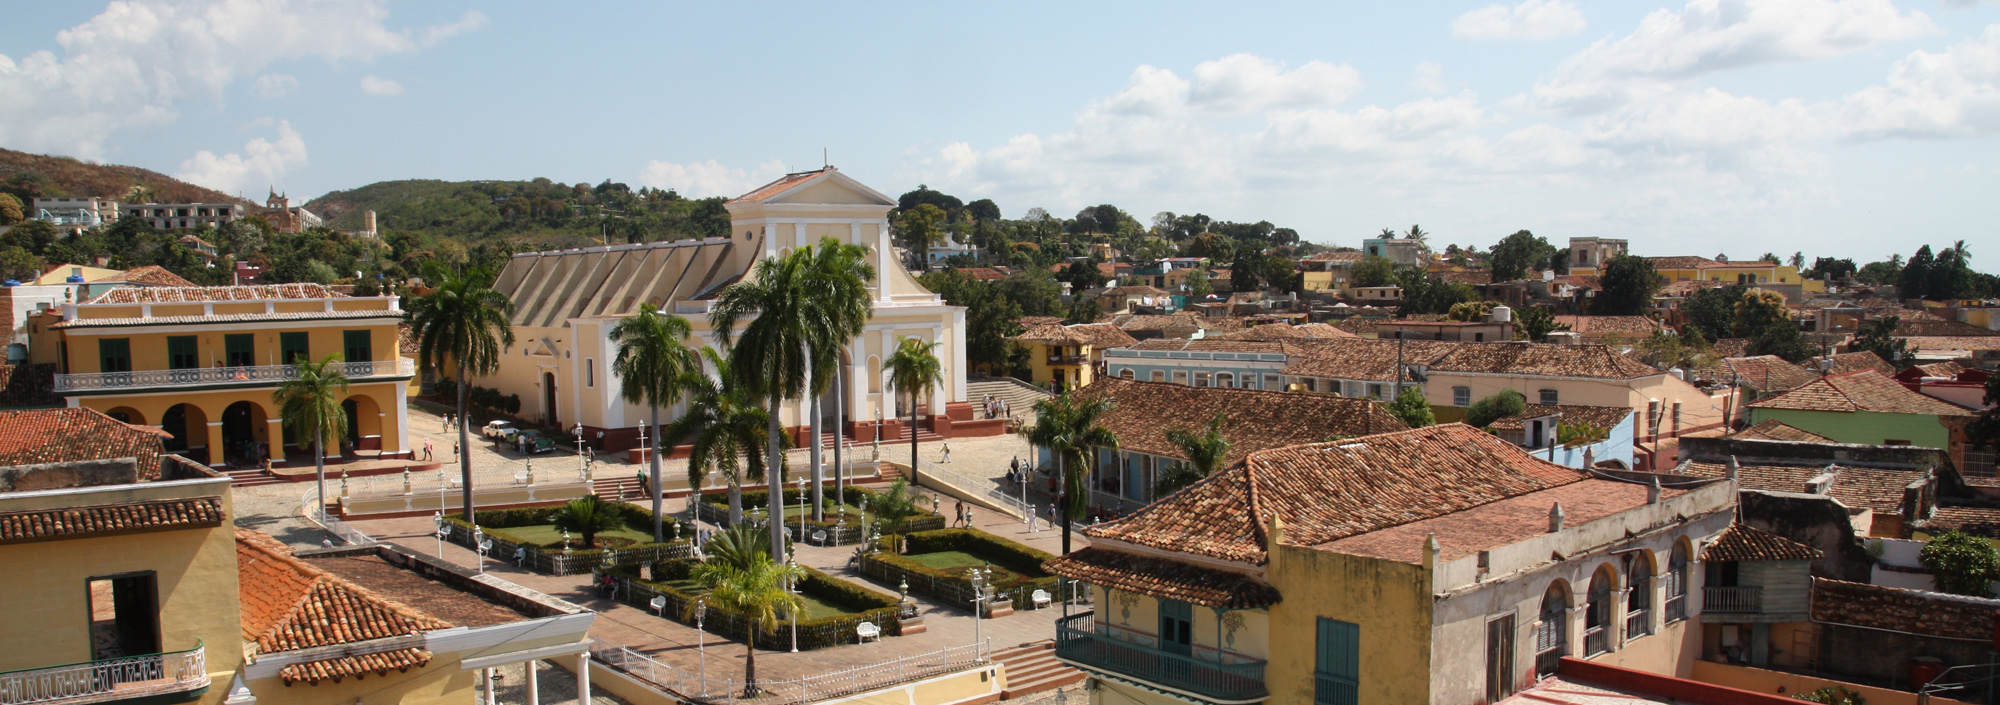 Koloniale Altstadt von Trinidad, Kuba